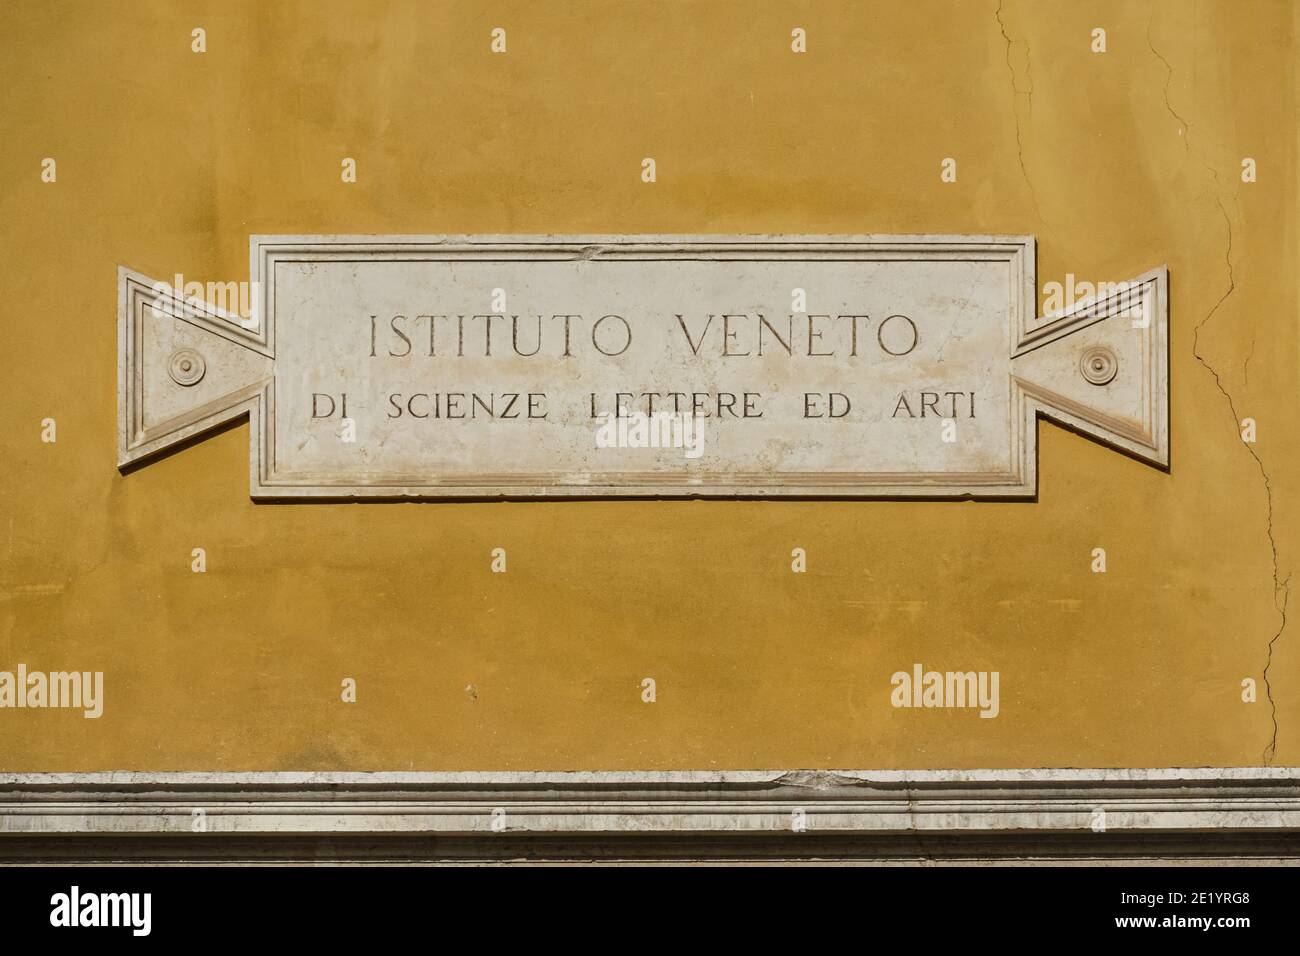 L'Istituto Veneto di Scienze, Lettere ed Arti (IVSLA) au Palais Loredan, Venise, Italie Banque D'Images